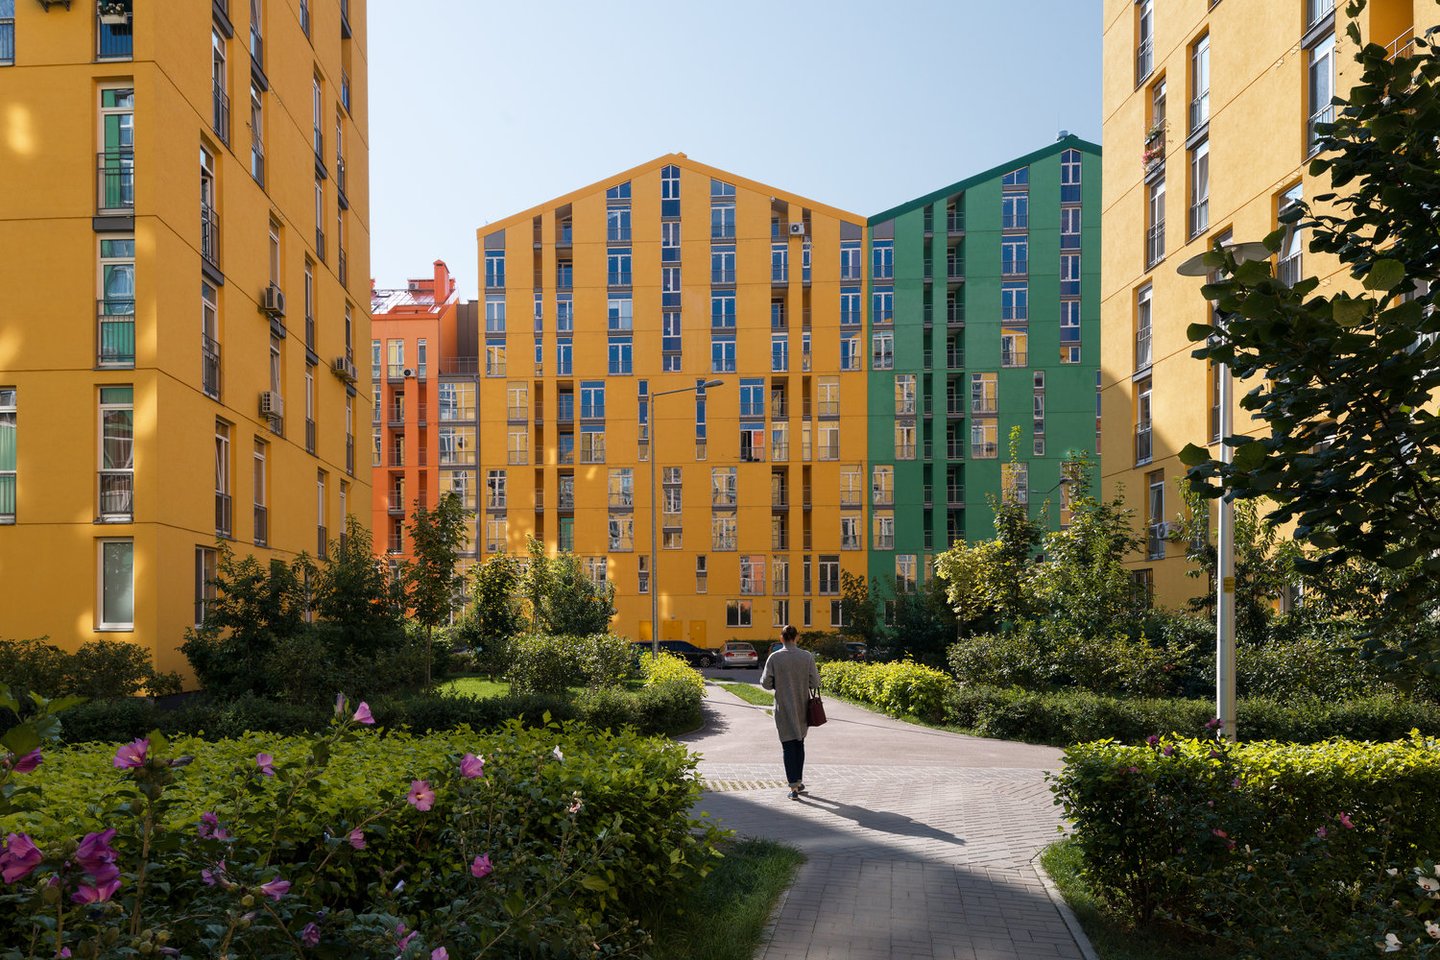 2019 metais Kijeve užbaigtas projektas „Comfort Town“ – didžiulis uždaras, kaip rašoma www.curbed.com, ledų spalvos daugiabučių gyvenamųjų namų kvartalas.<br>Andrey Avdeenko / archdaily.com